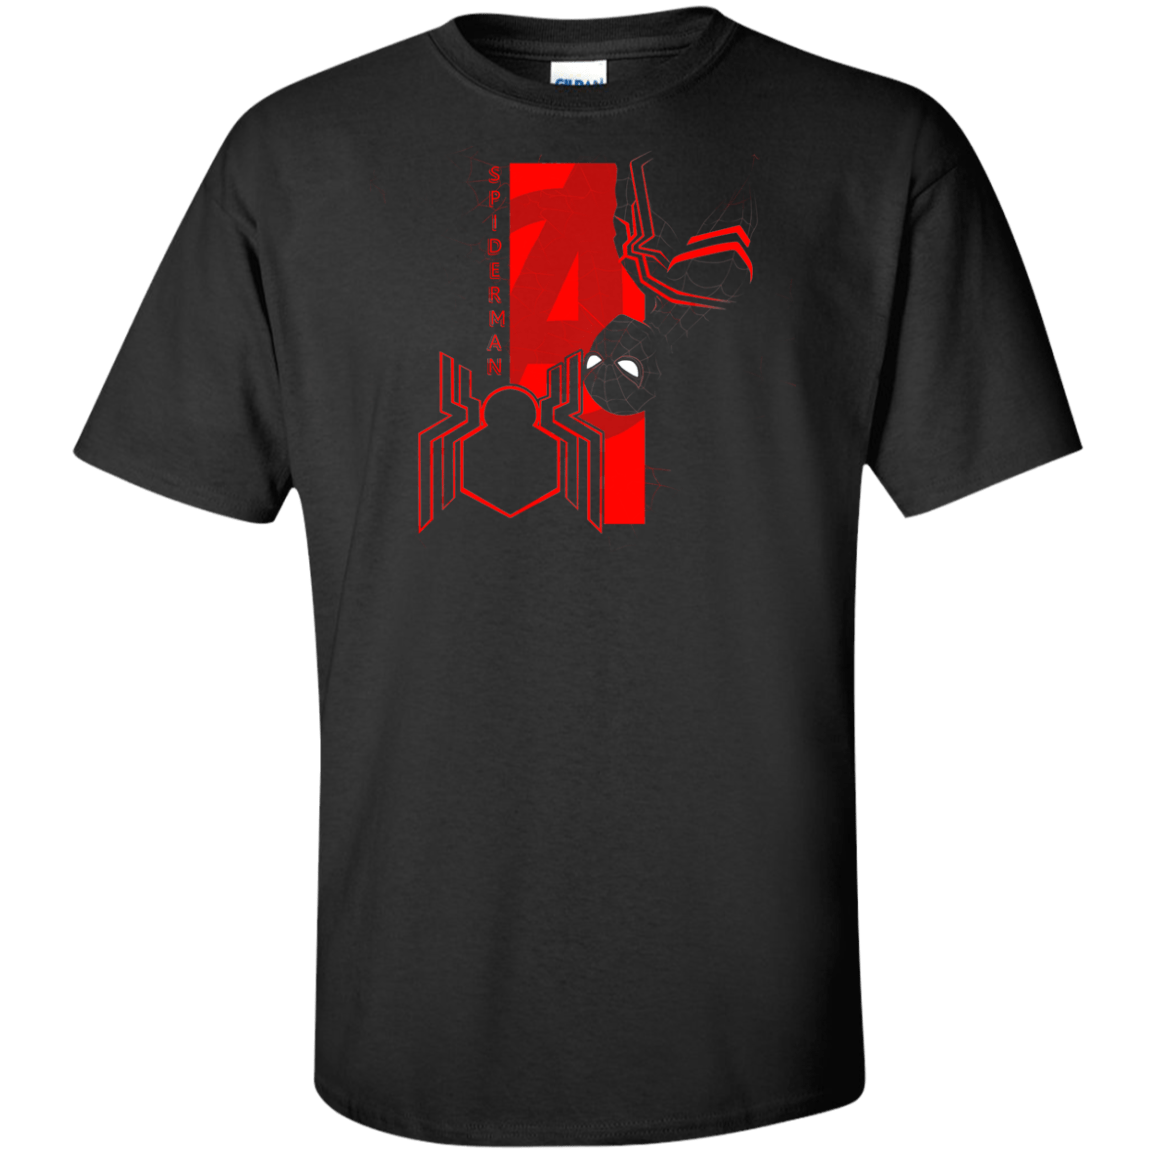 T-Shirts Black / XLT Spiderman Profile Tall T-Shirt